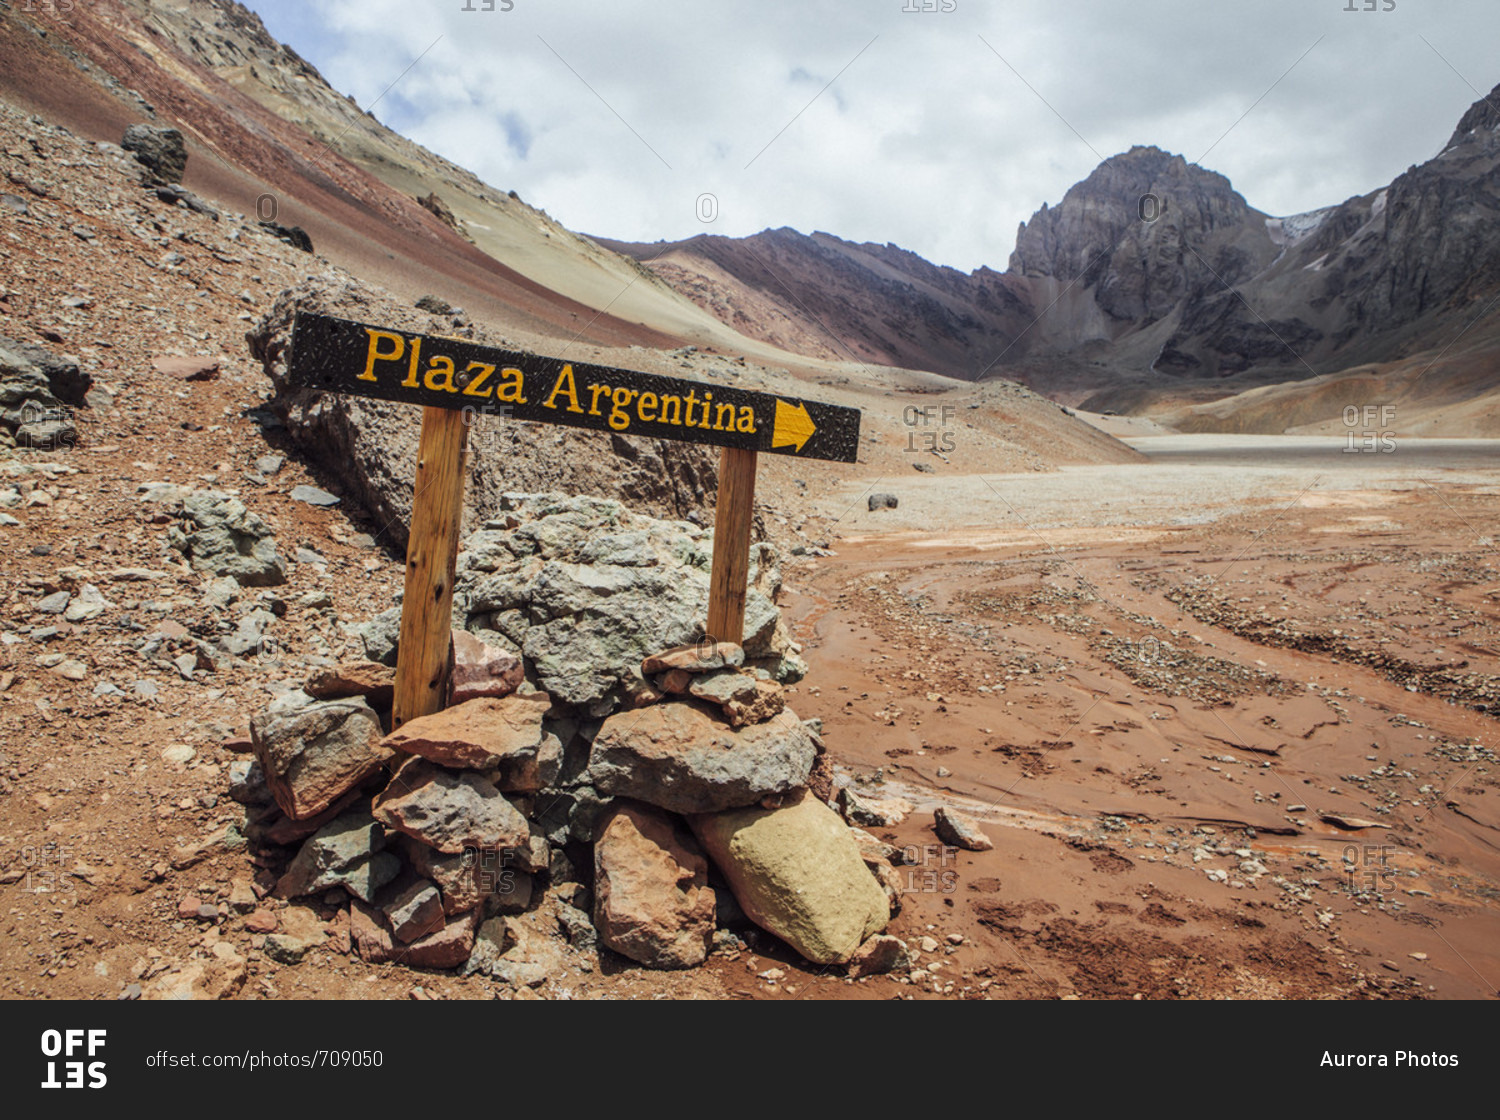 Plaza Argentina Base Camp sign on Aconcagua, Mendoza, Argentina